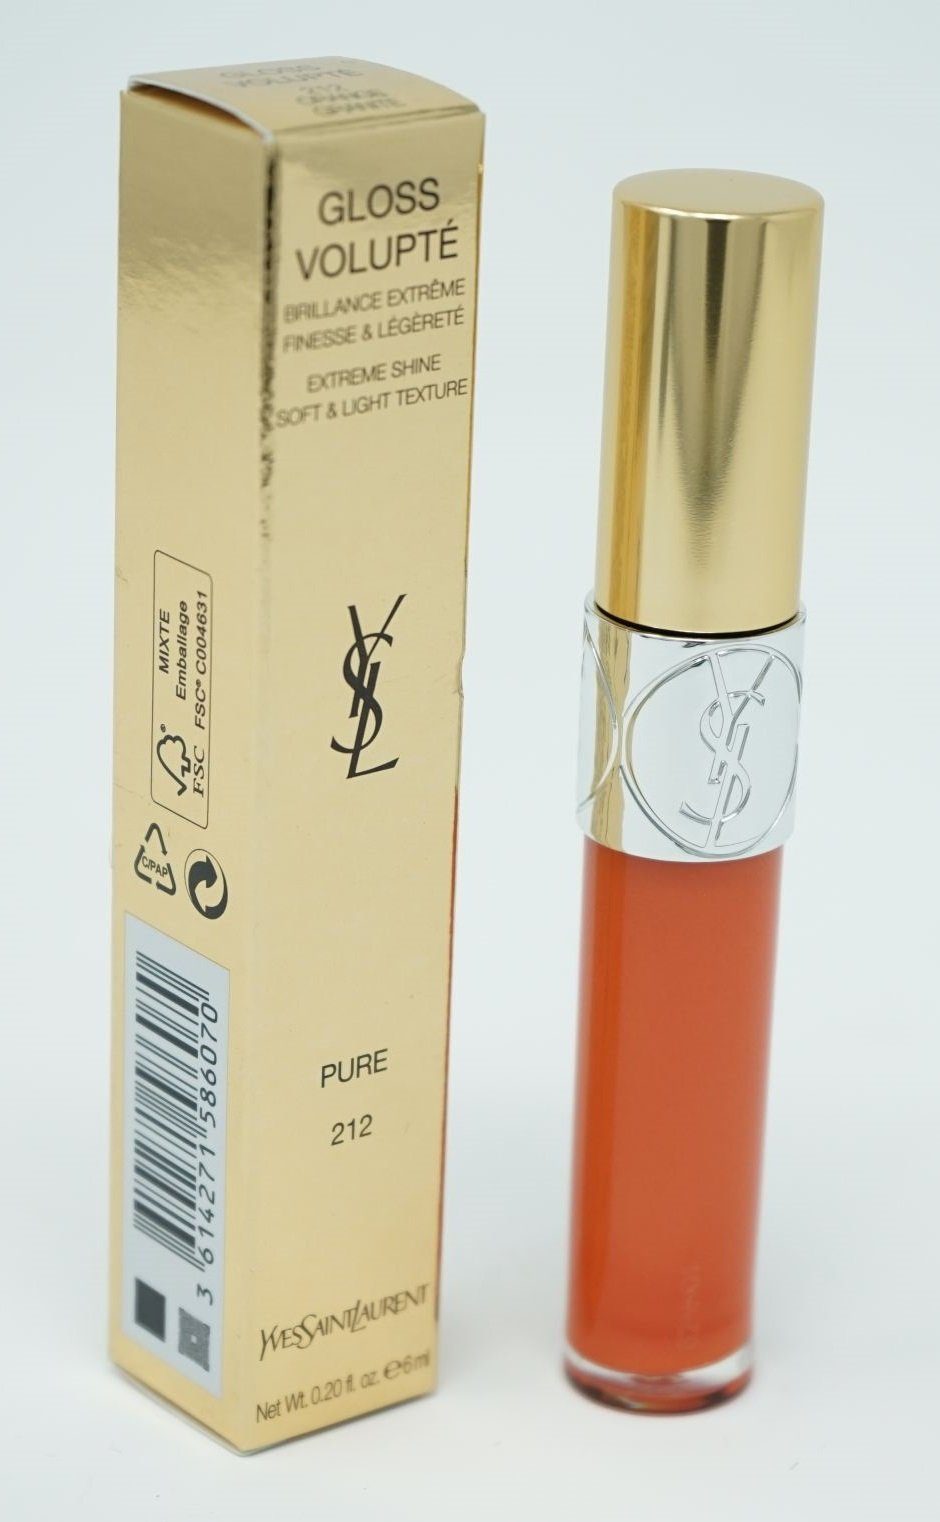 YVES SAINT LAURENT Körperspray Yves 212 Saint Volupte Gloss Lipgloss Laurent Orange Granite